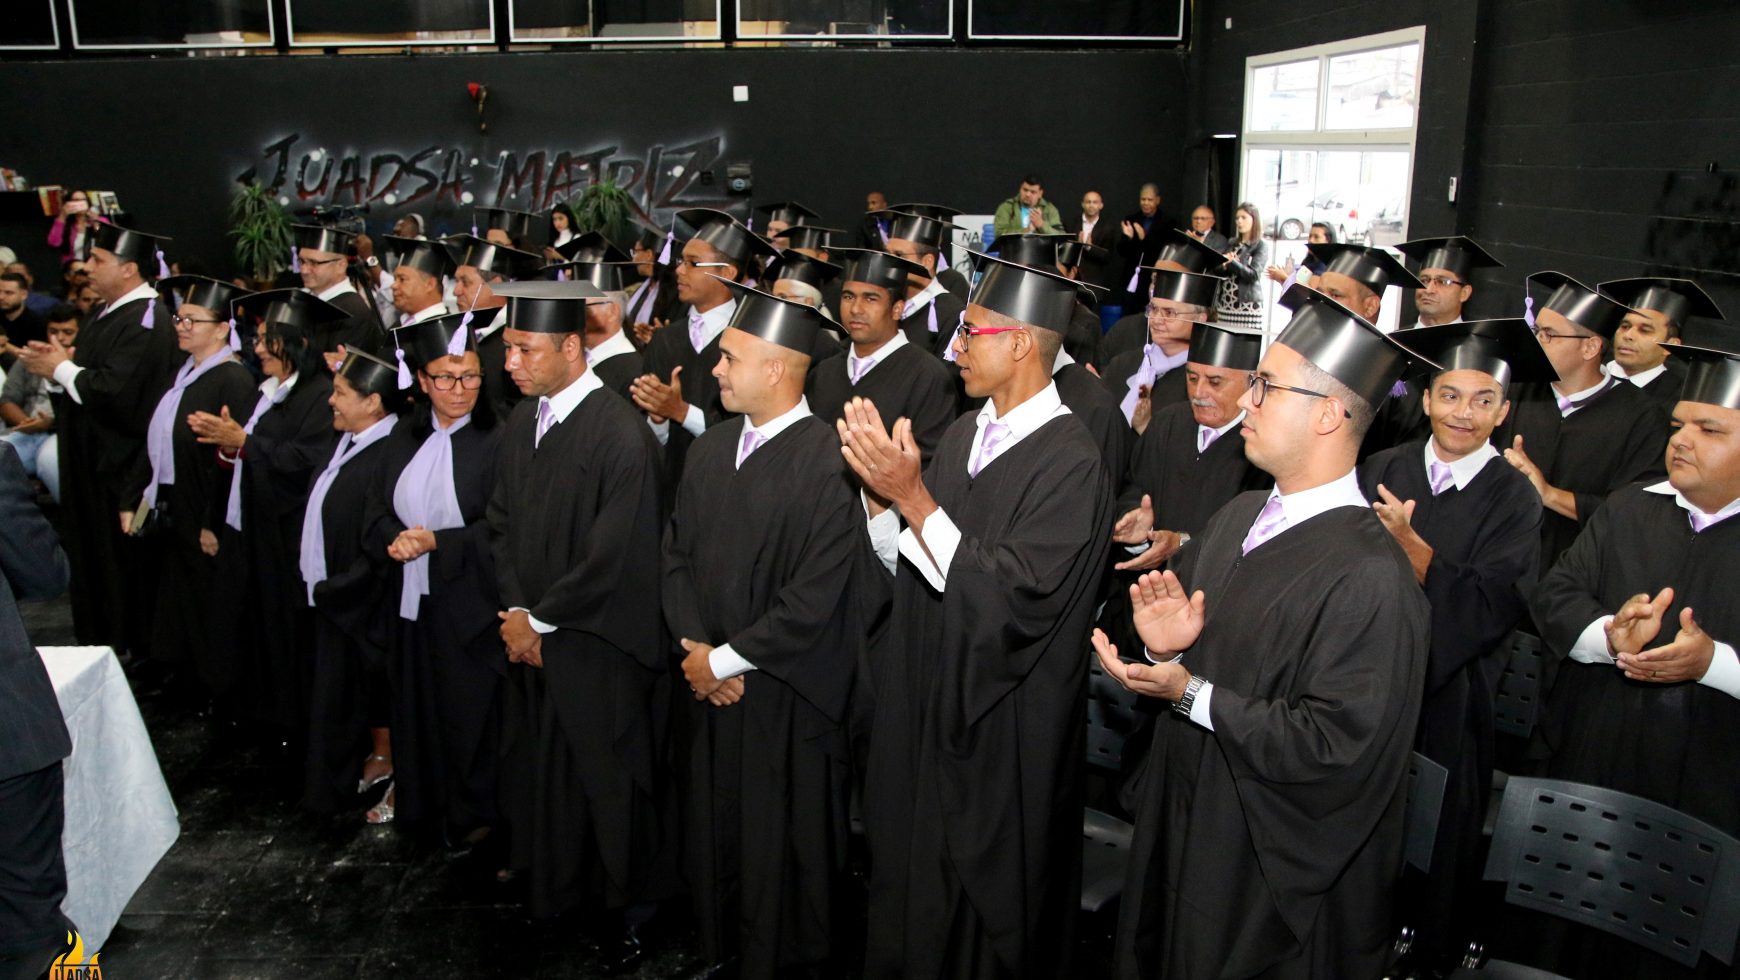 ITADSA realiza formatura de alunos em emocionante cerimônia